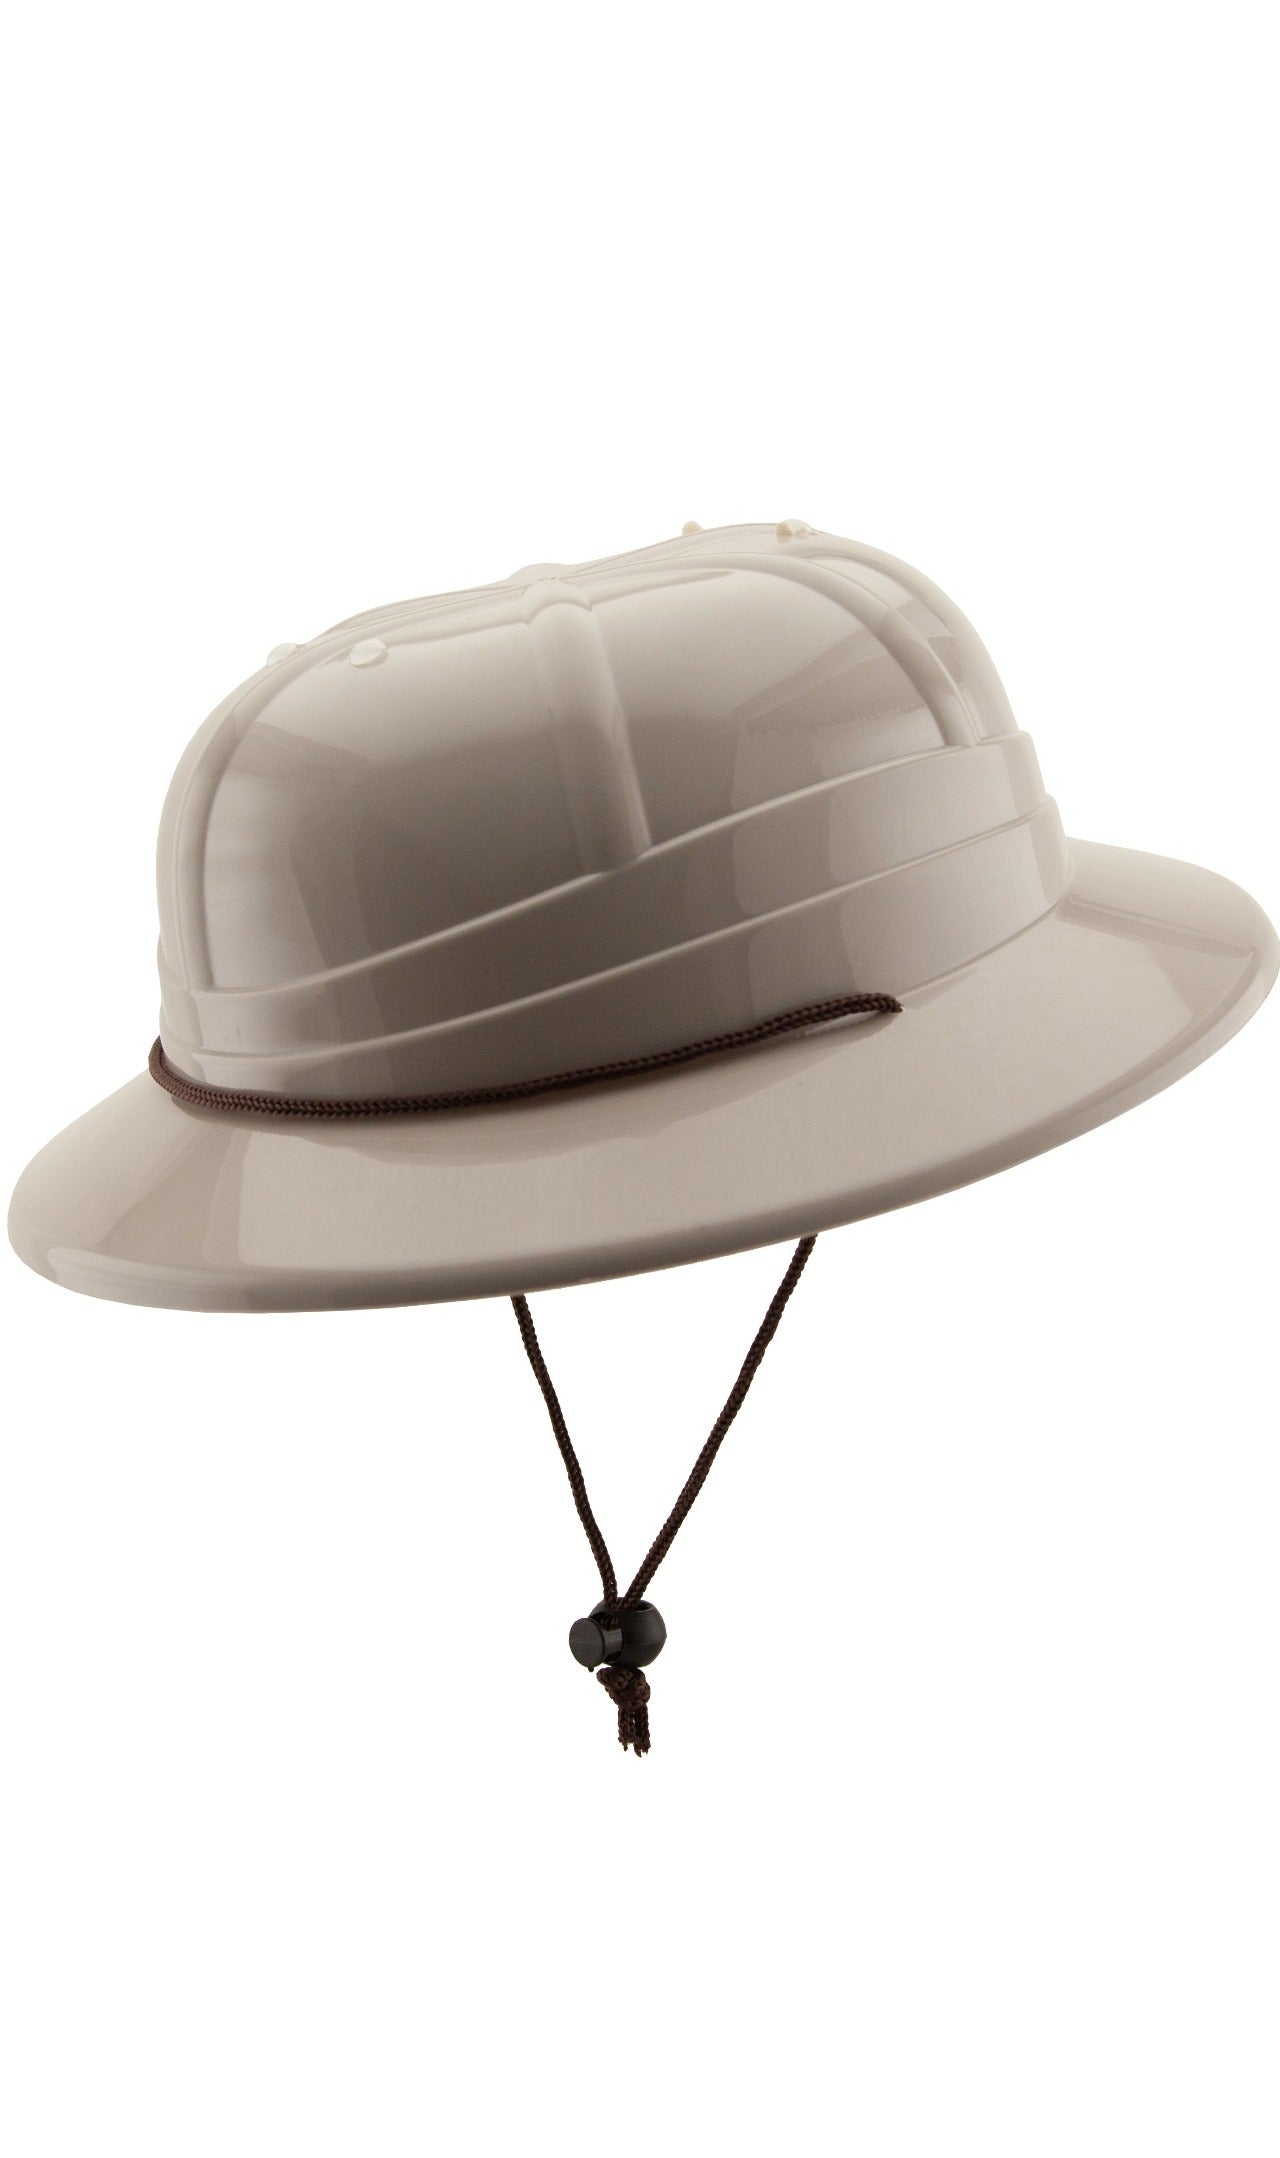 Supergangas - Accesorios para disfraz de Explorador, Sombrero